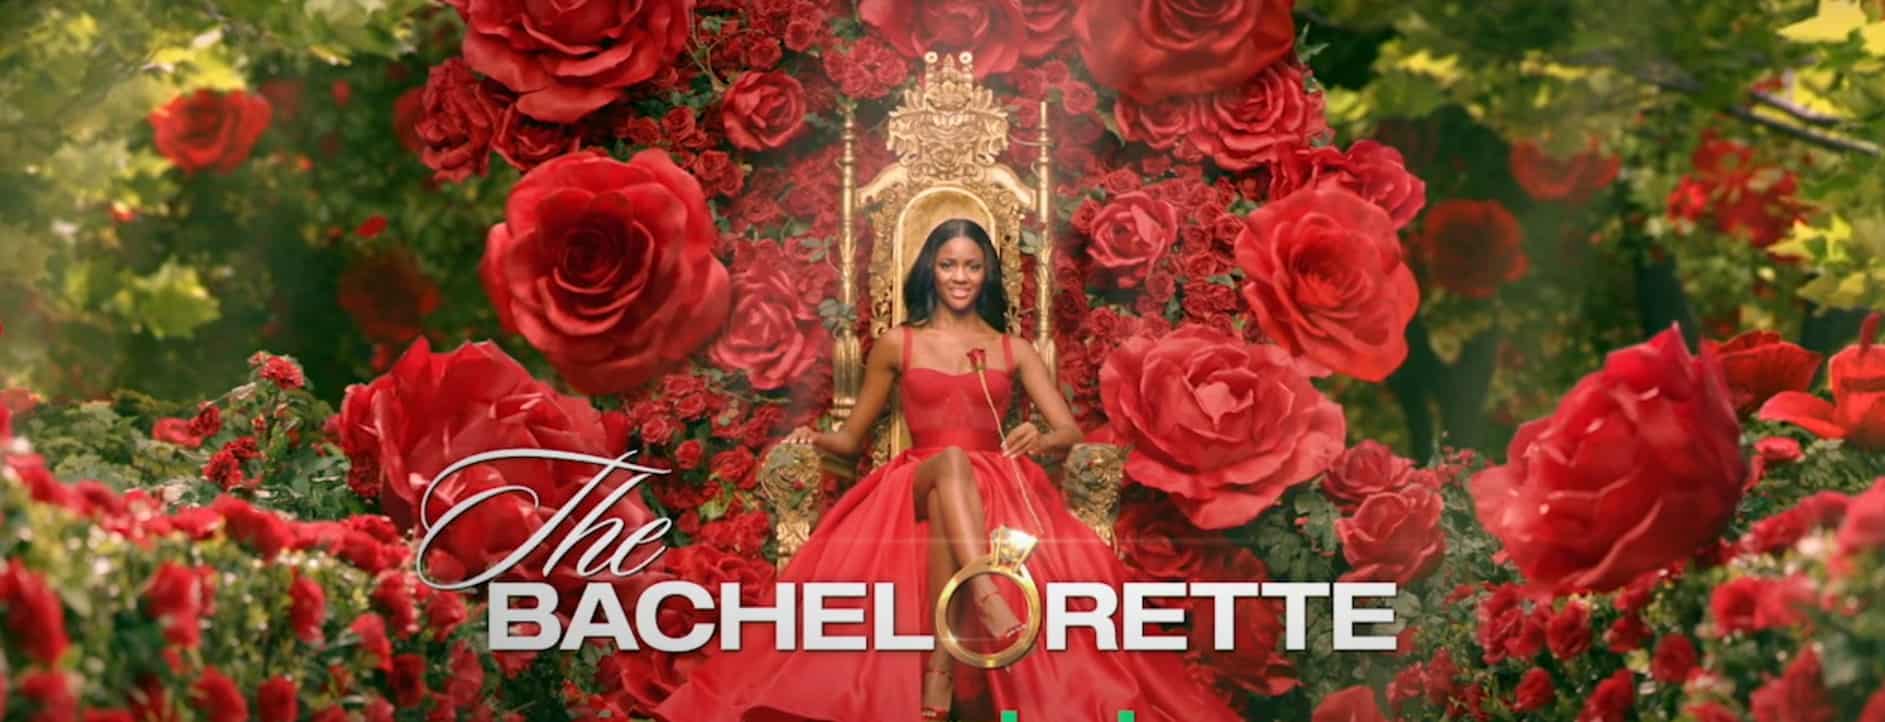 The Bachelorette Season 20 Episode 3 Release Date, Spoilers